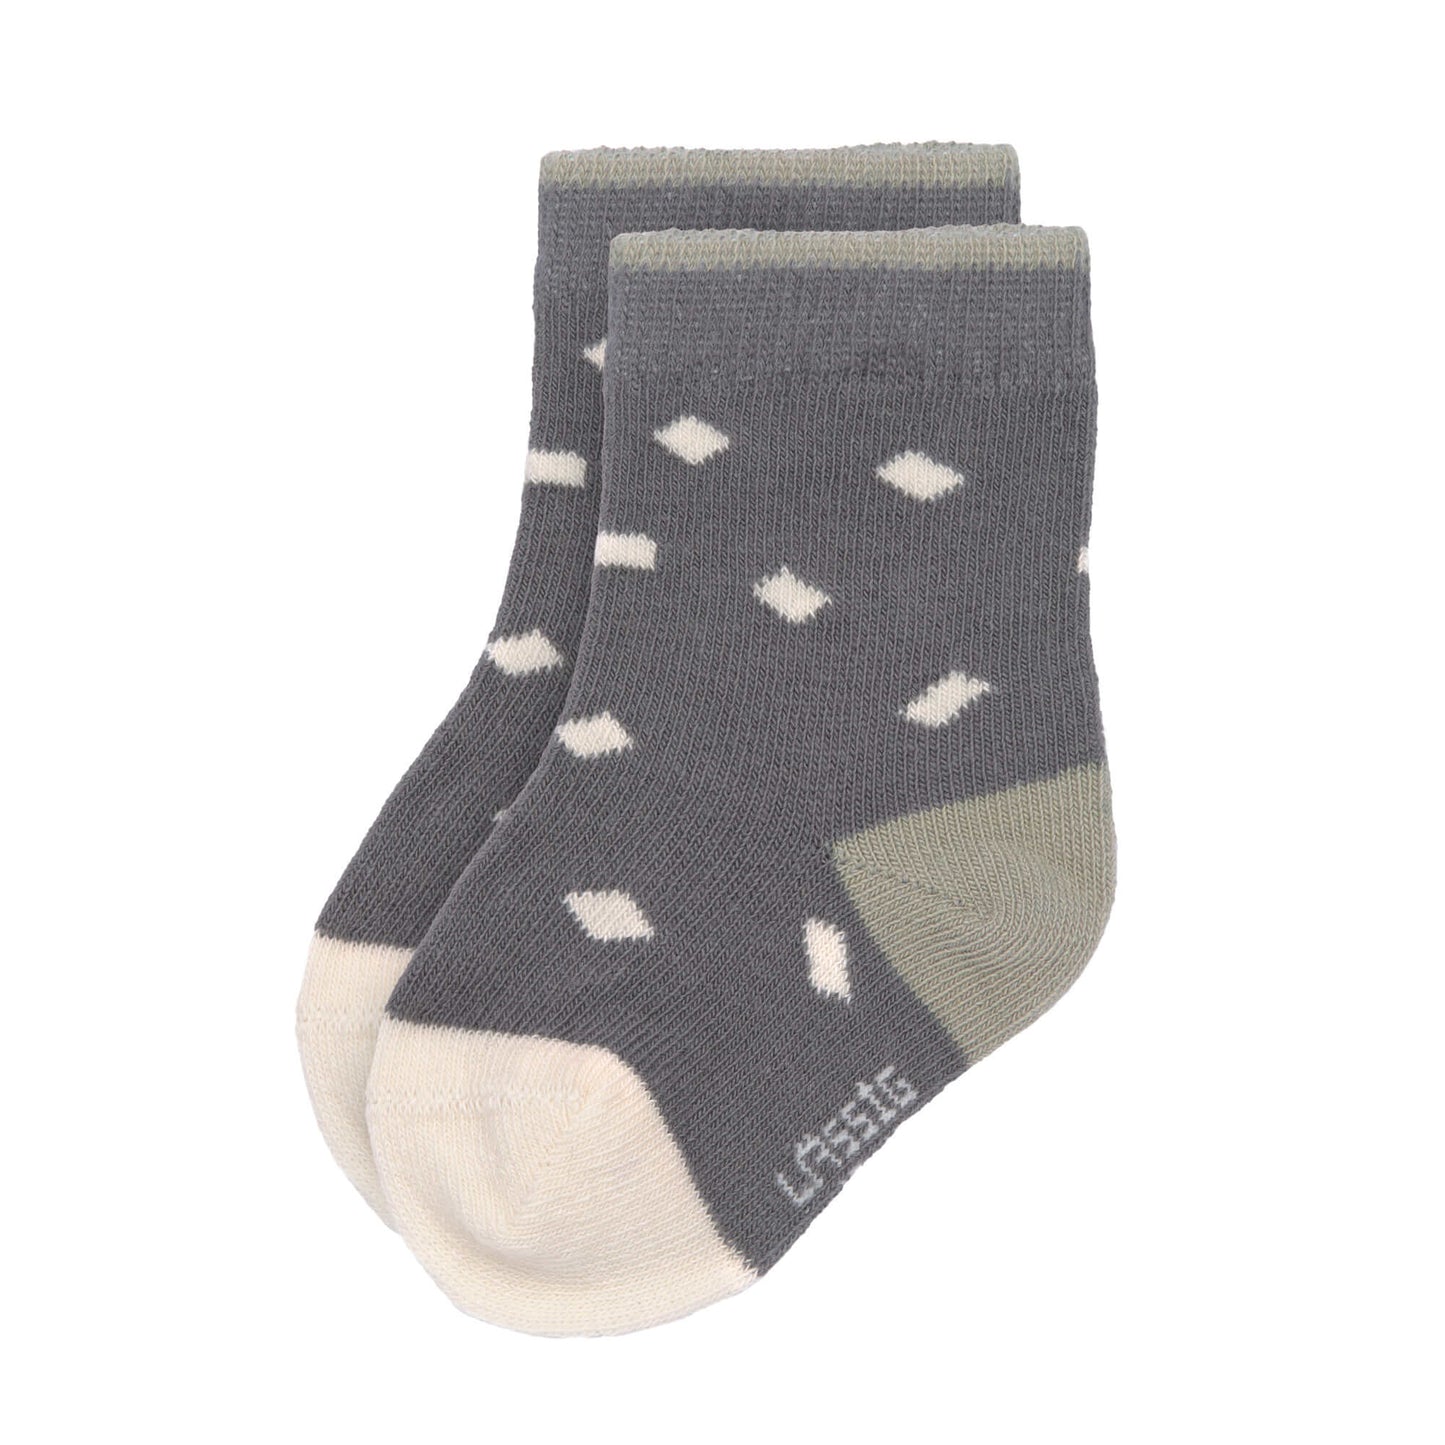 Kindersocken (3er-Pack) GOTS - Socks, Anthracite Olive